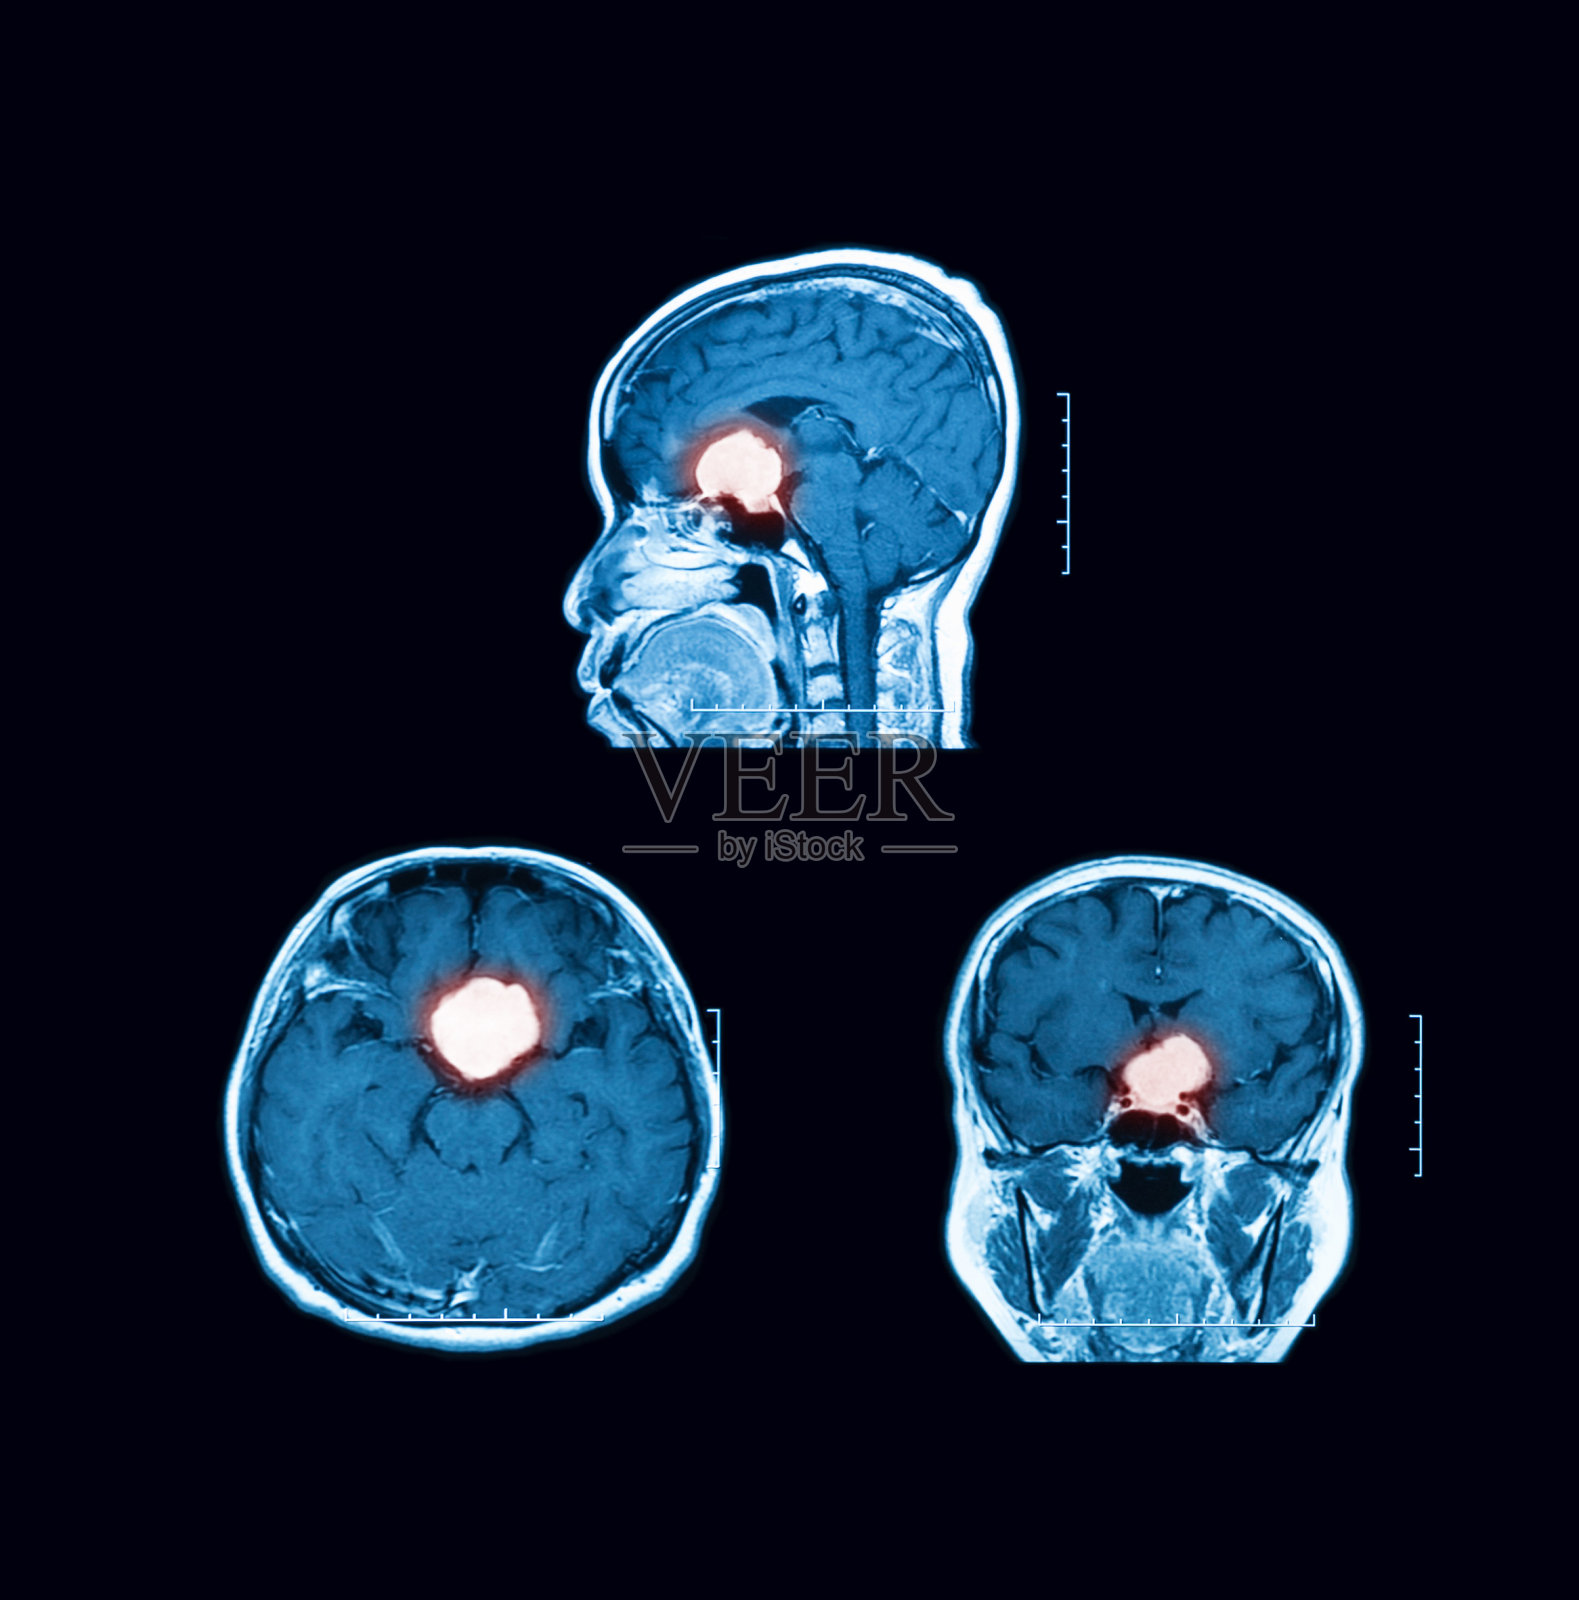 磁共振成像(MRI)与脑部扫描对比。矢状面、横切面和冠状面照片摄影图片